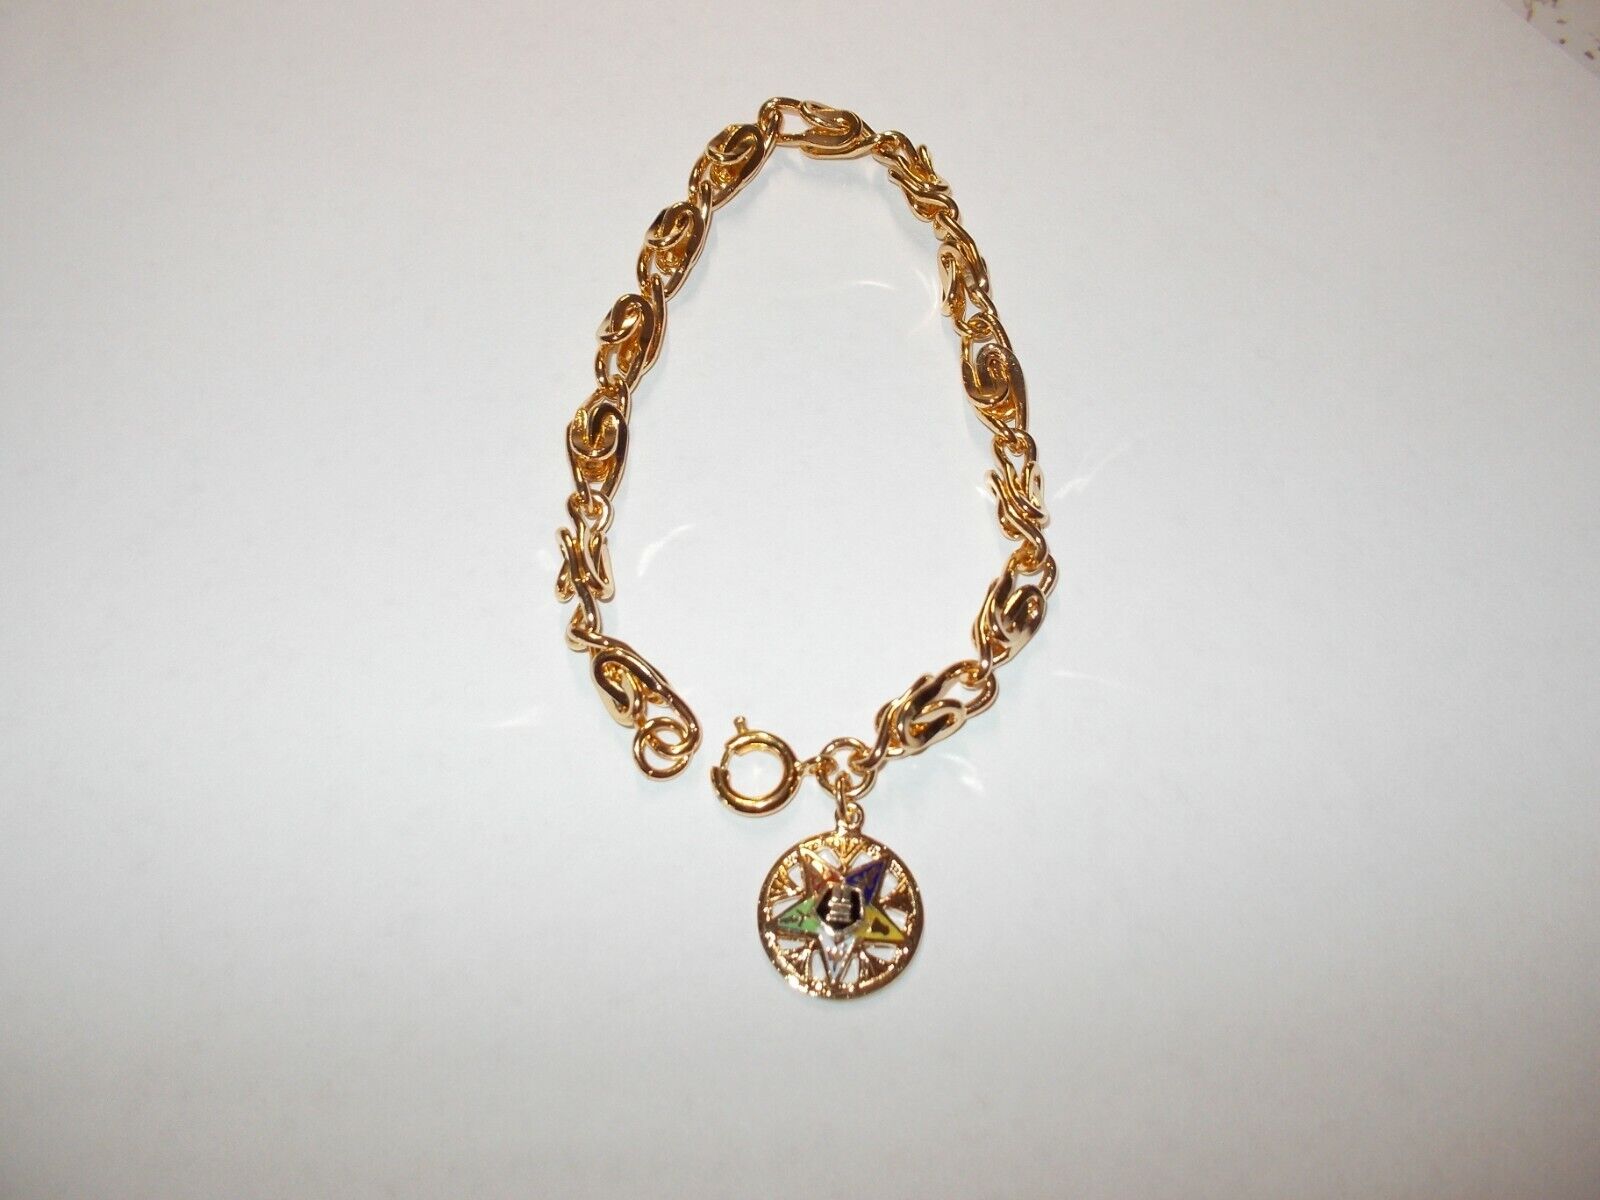 Buy4+Get30%...OES Women's 8 in.Link Chain Masonic Bracelet w/Pendant Gold Plate?